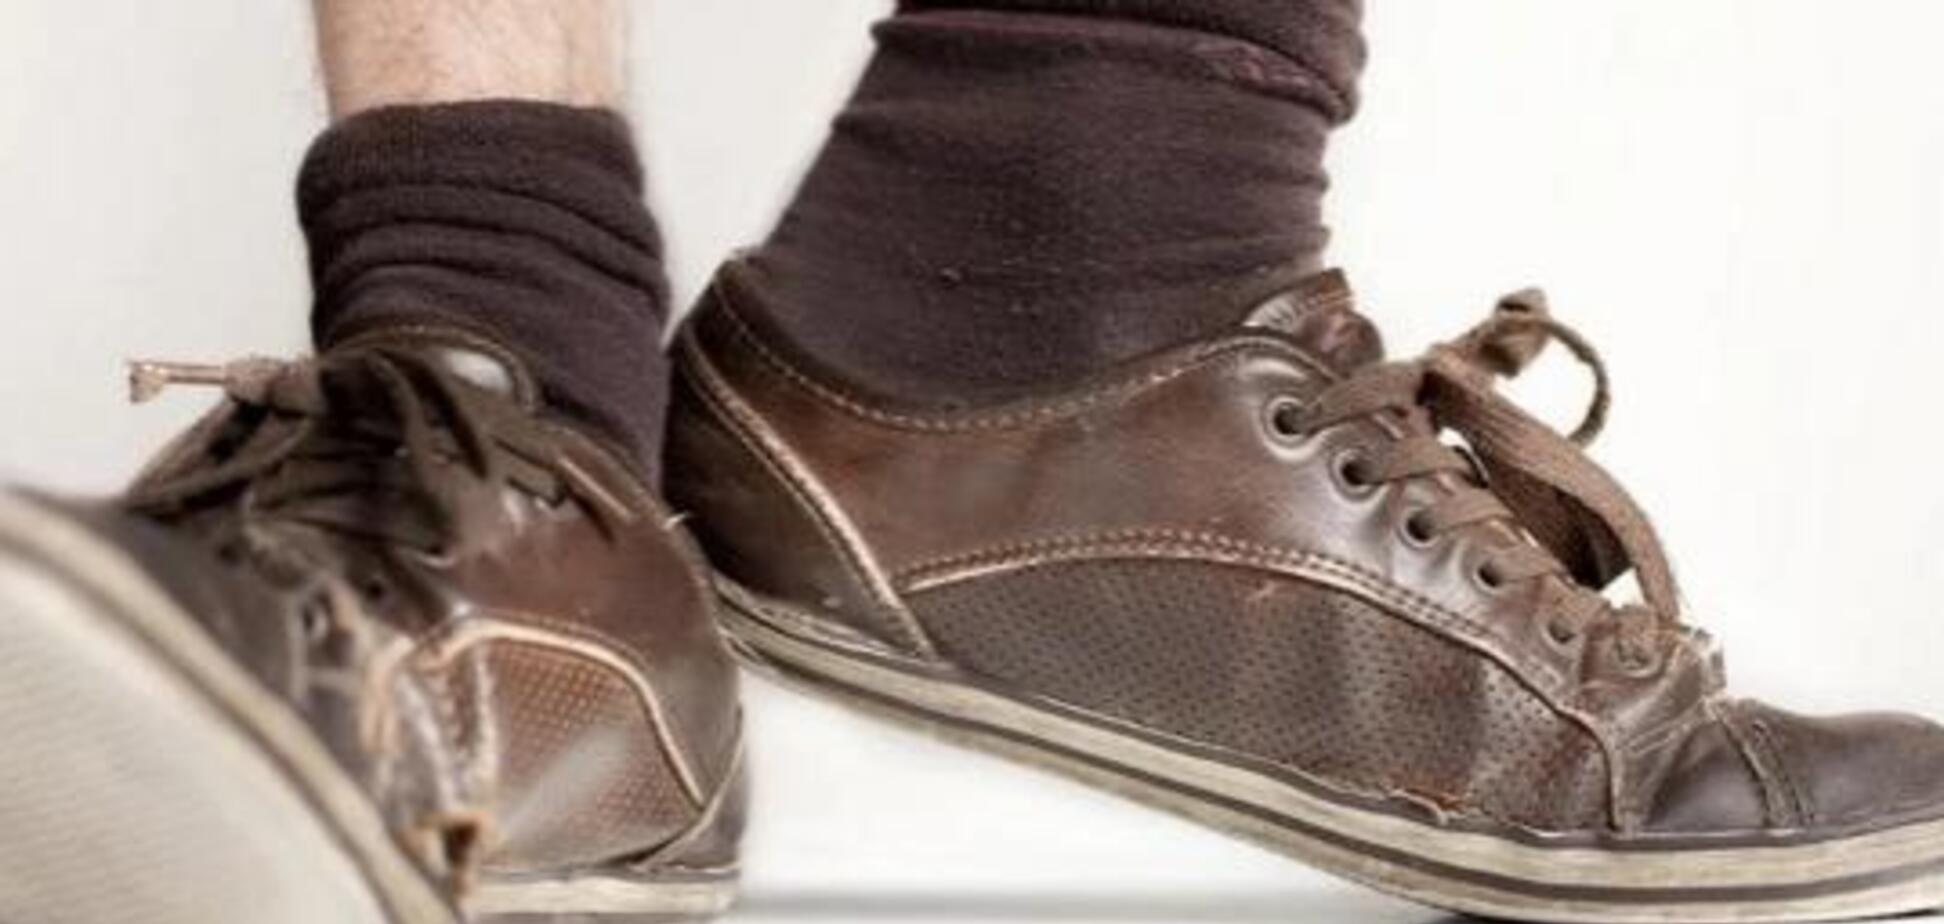 Задыхался: китайца чуть не убила привычка нюхать грязные носки 